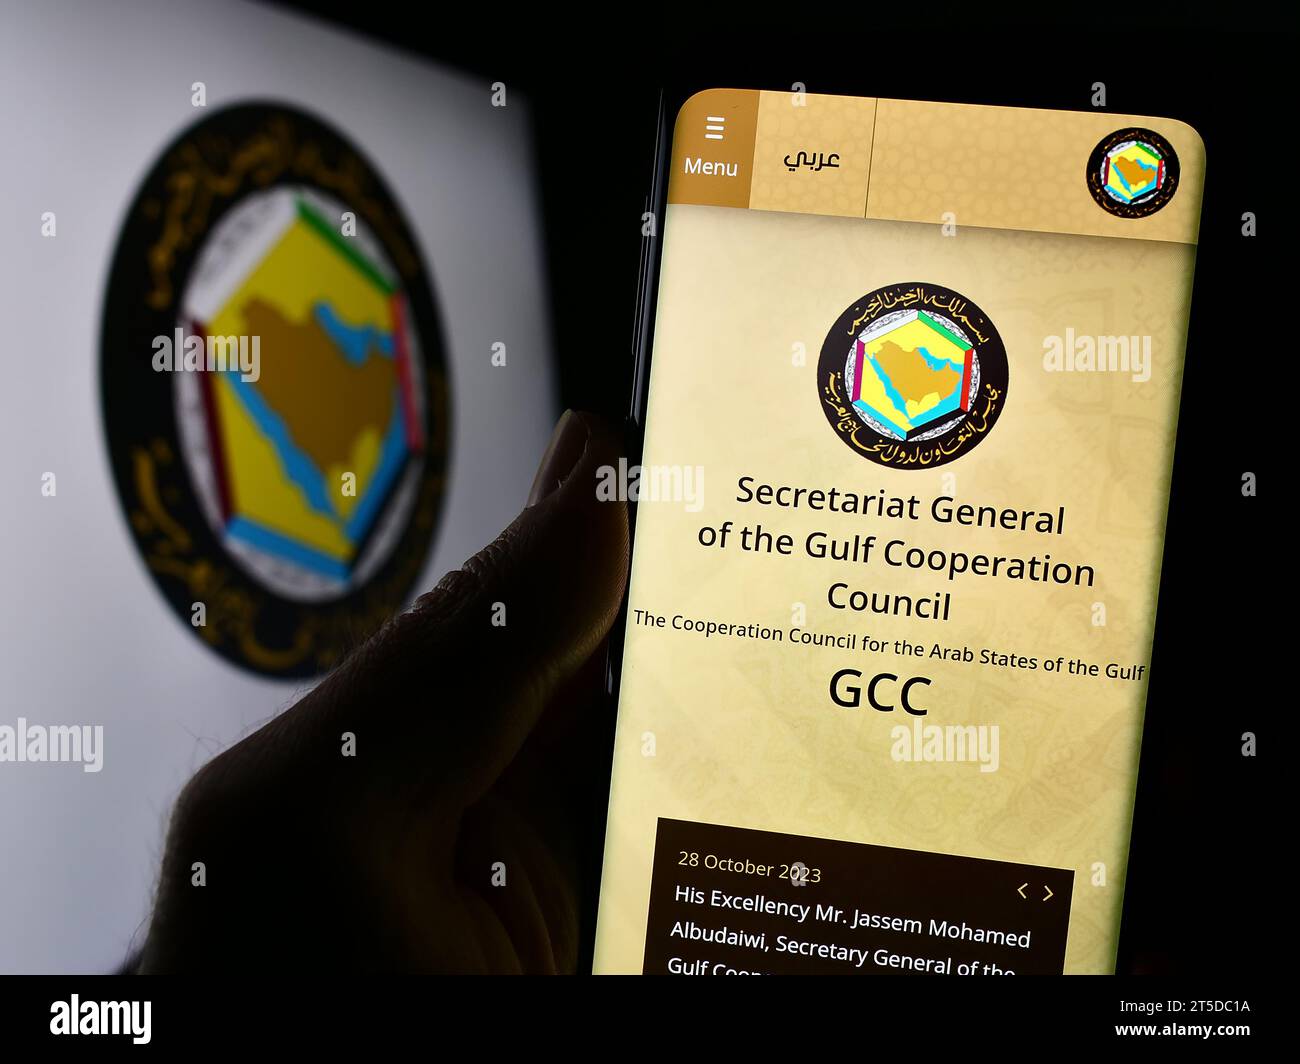 Persona in possesso di cellulare con pagina web del Consiglio di cooperazione del Golfo dell'unione araba (CCG) davanti al logo. Concentrarsi sul centro del display del telefono. Foto Stock